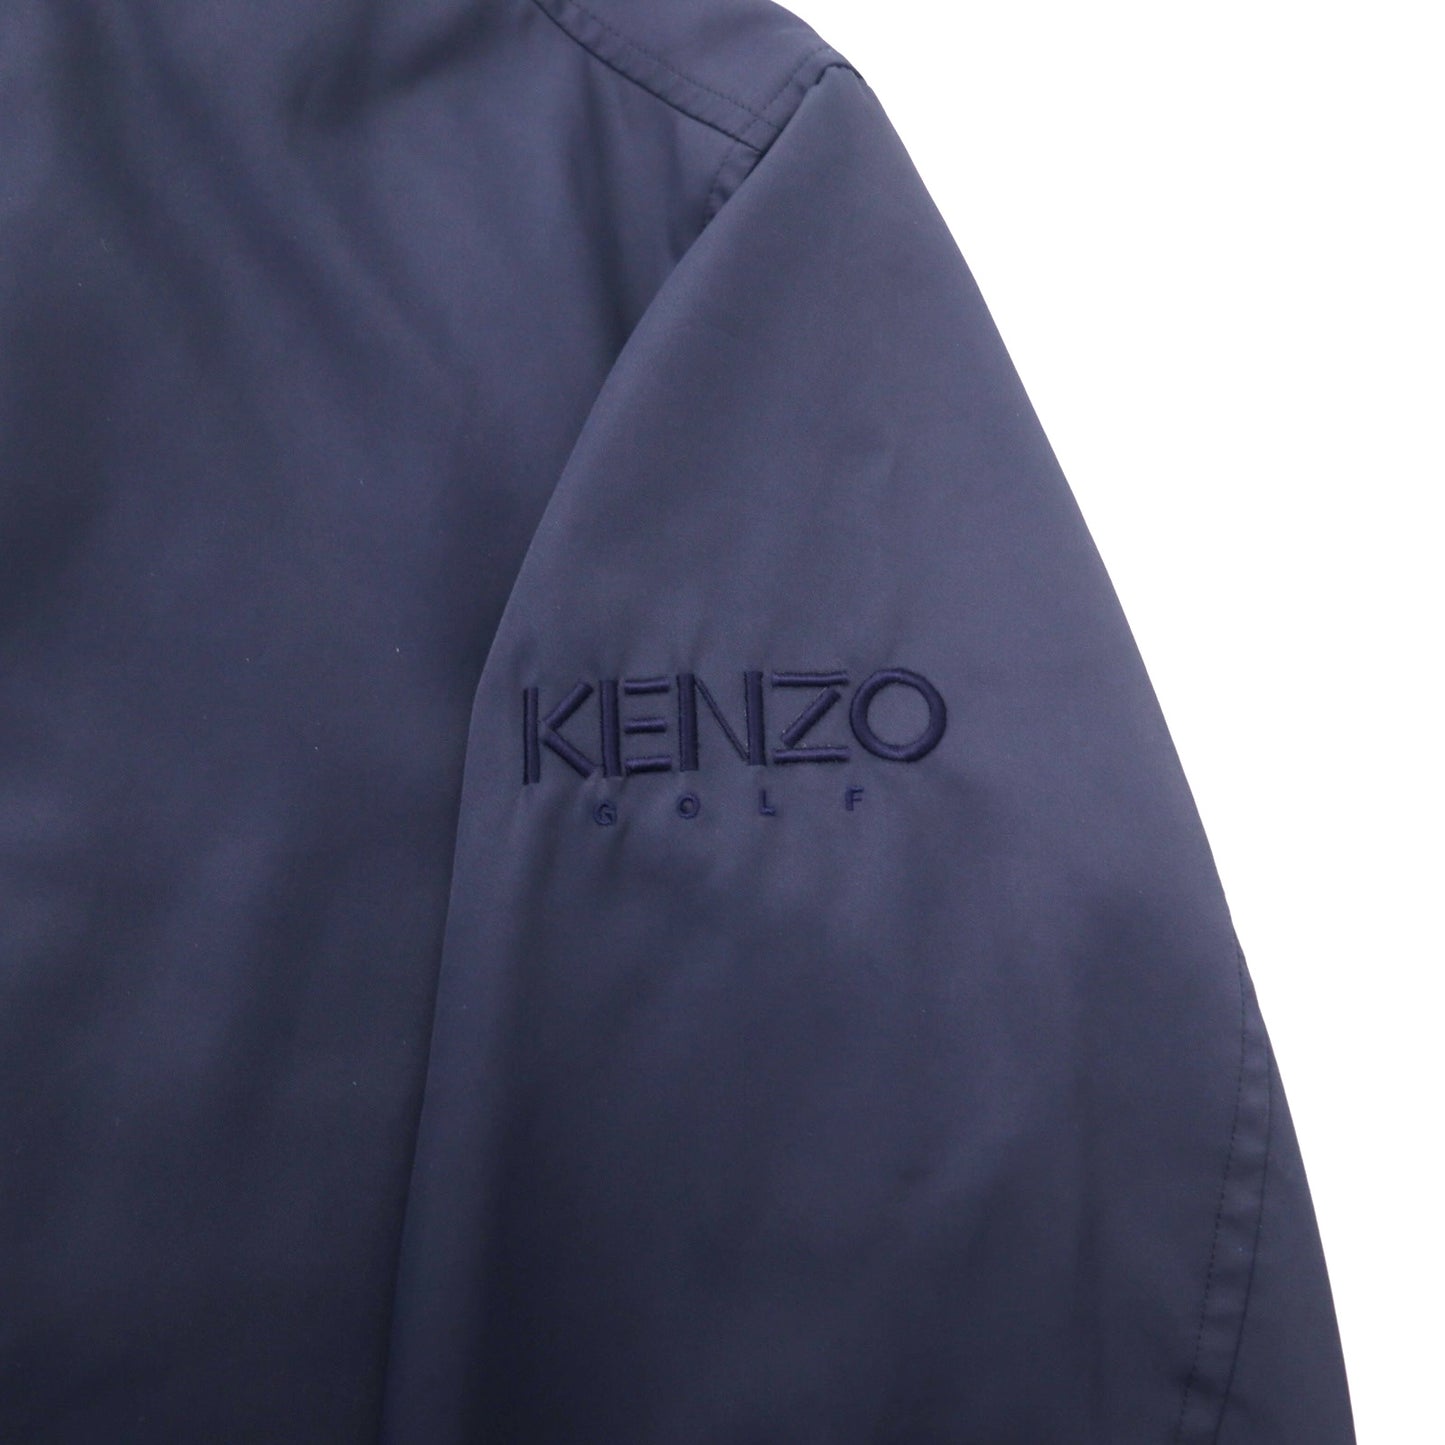 KENZO GOLF 90年代 ステンカラーコート 3 ネイビー ポリエステル 中綿ライナー着脱式 ロゴ刺繍